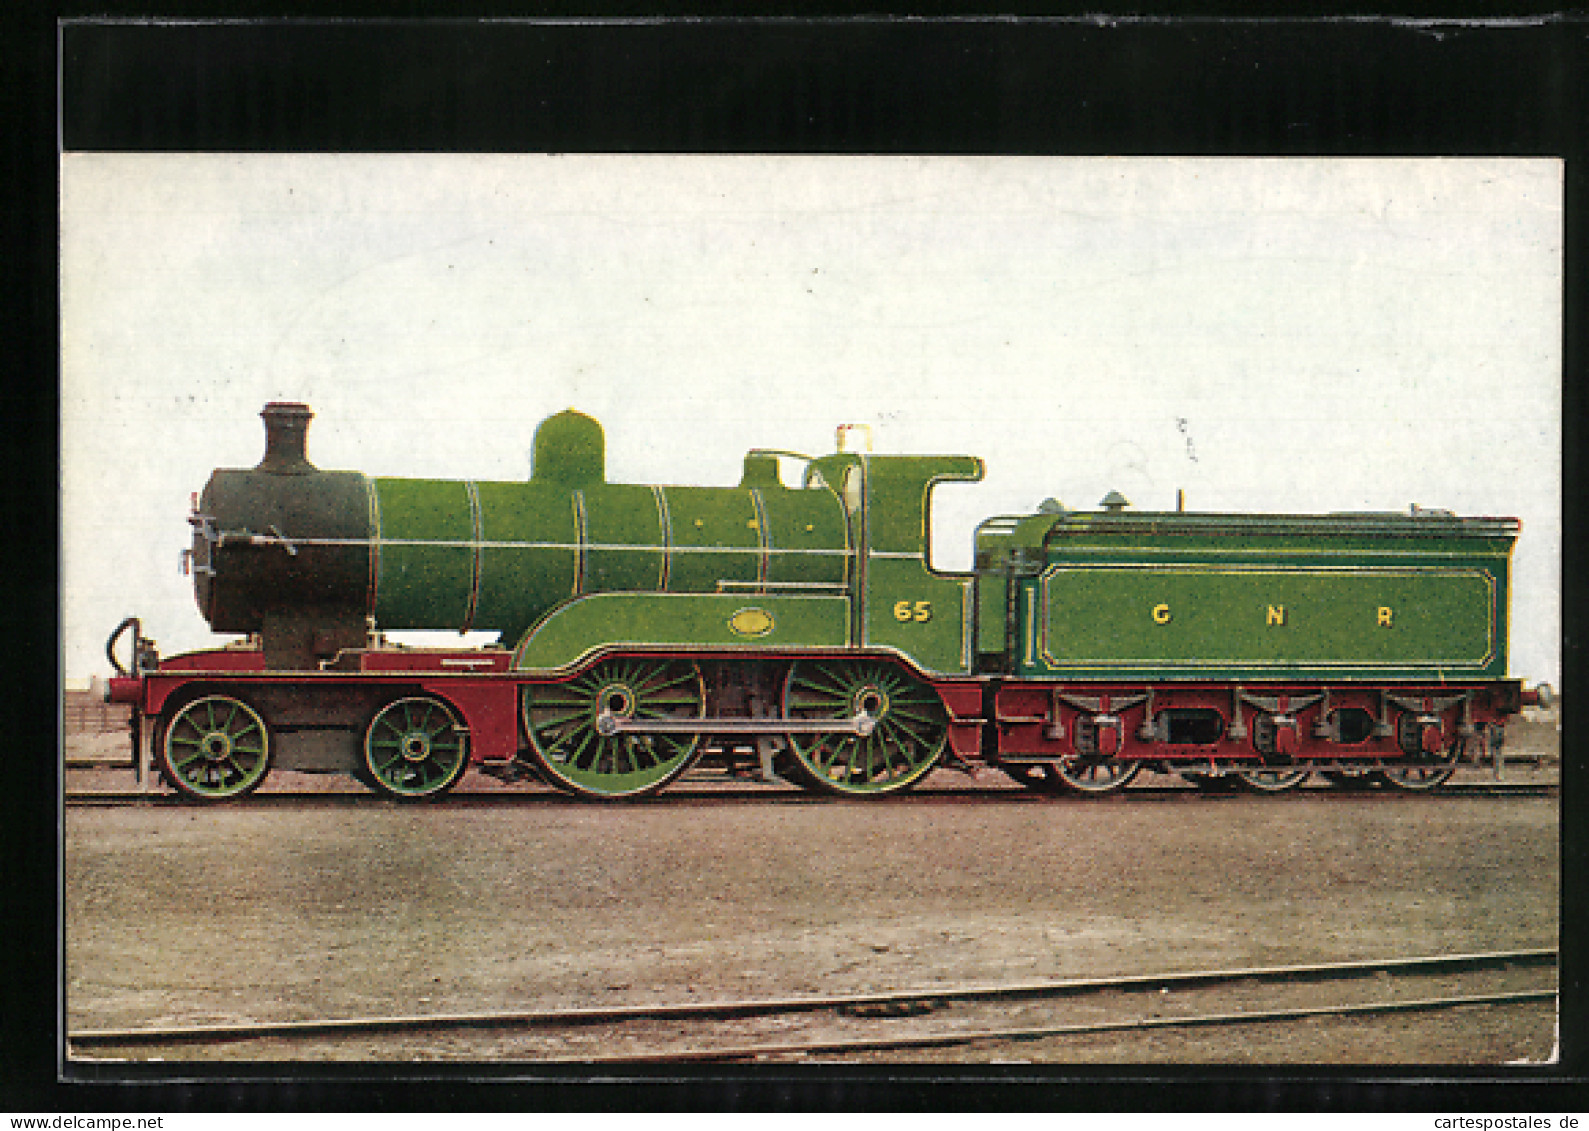 Pc Englische Eisenbahn 65, GNR, Express Passenger Engine  - Treni